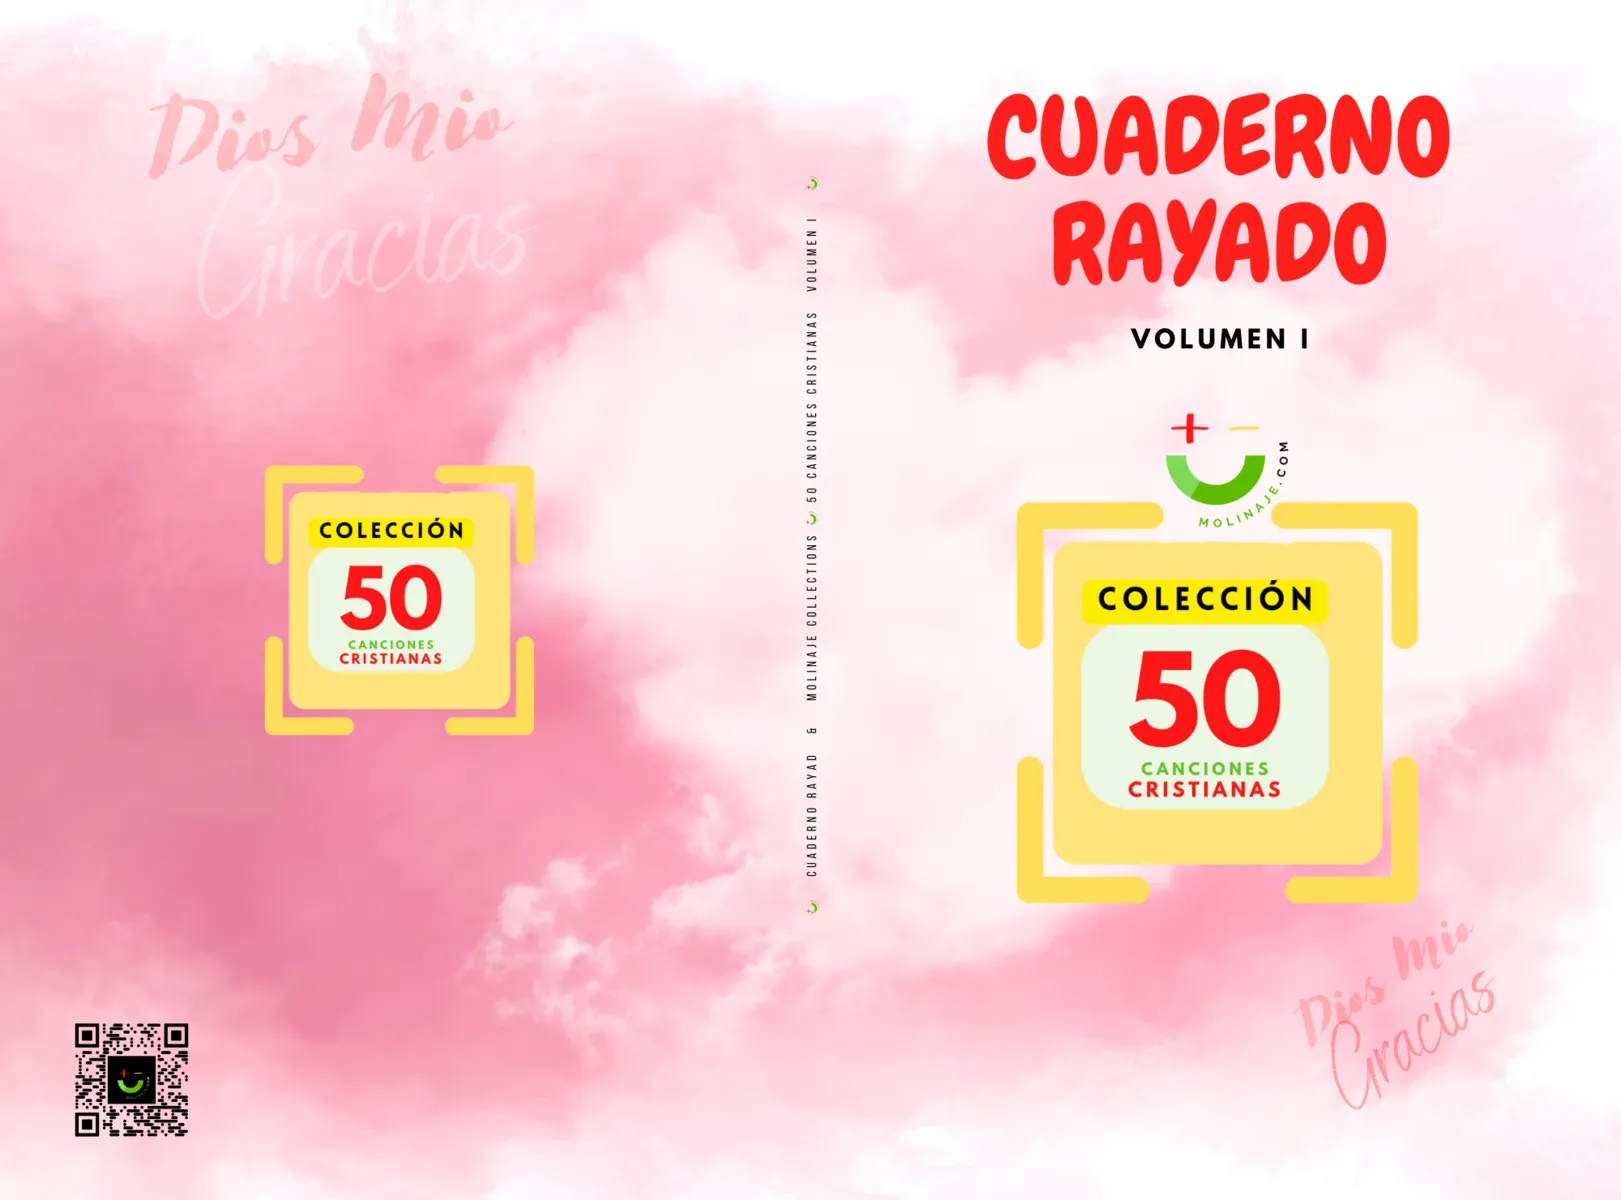 CUADERNO RAYADO (PACKS) & 50 CANCIONES CRISTIANAS